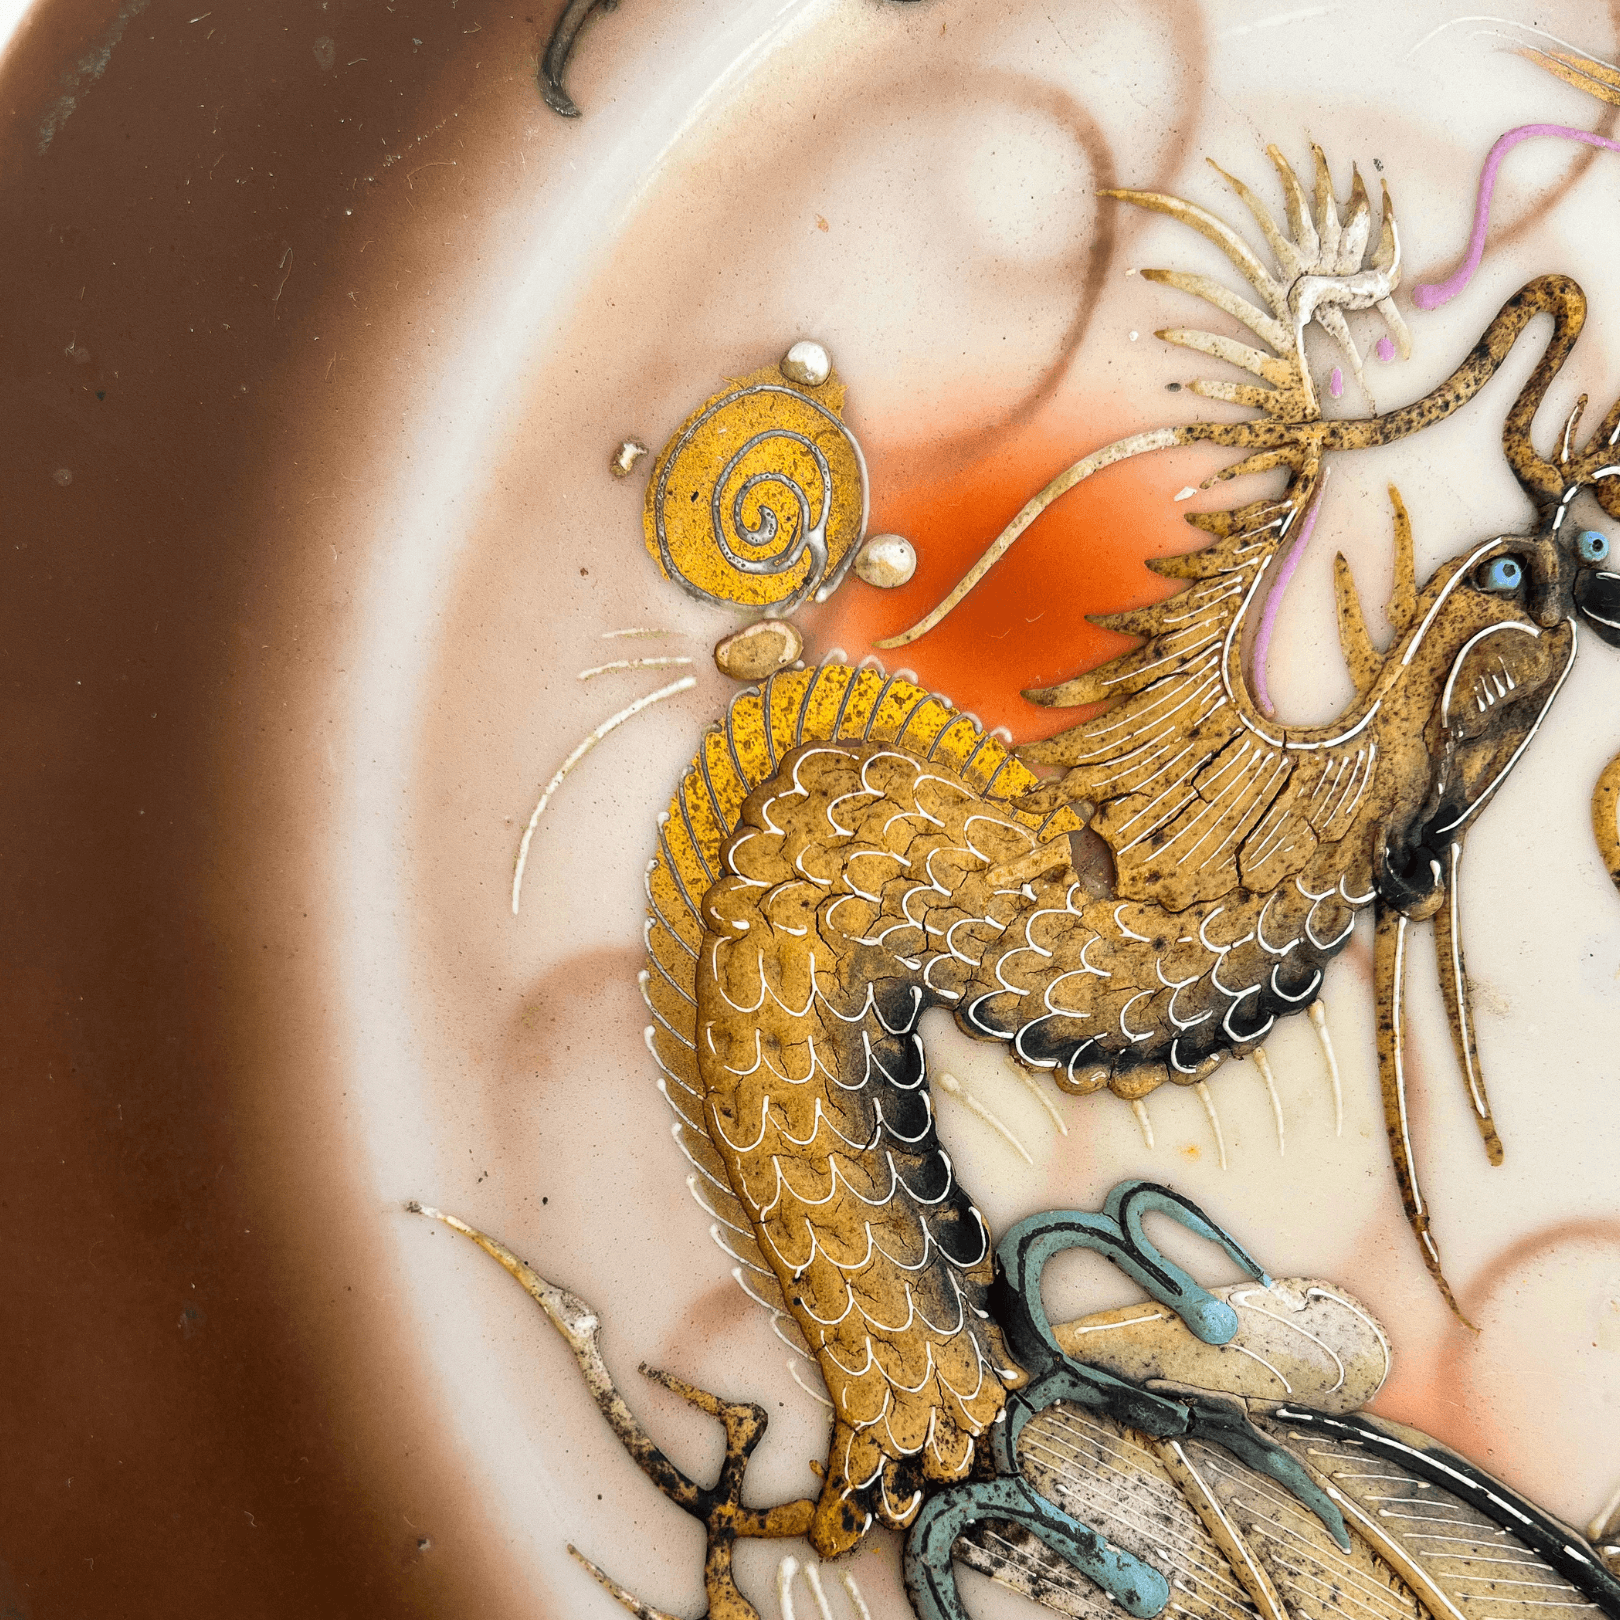 Jogo de chá em porcelana japonesa, decoração dragão, co